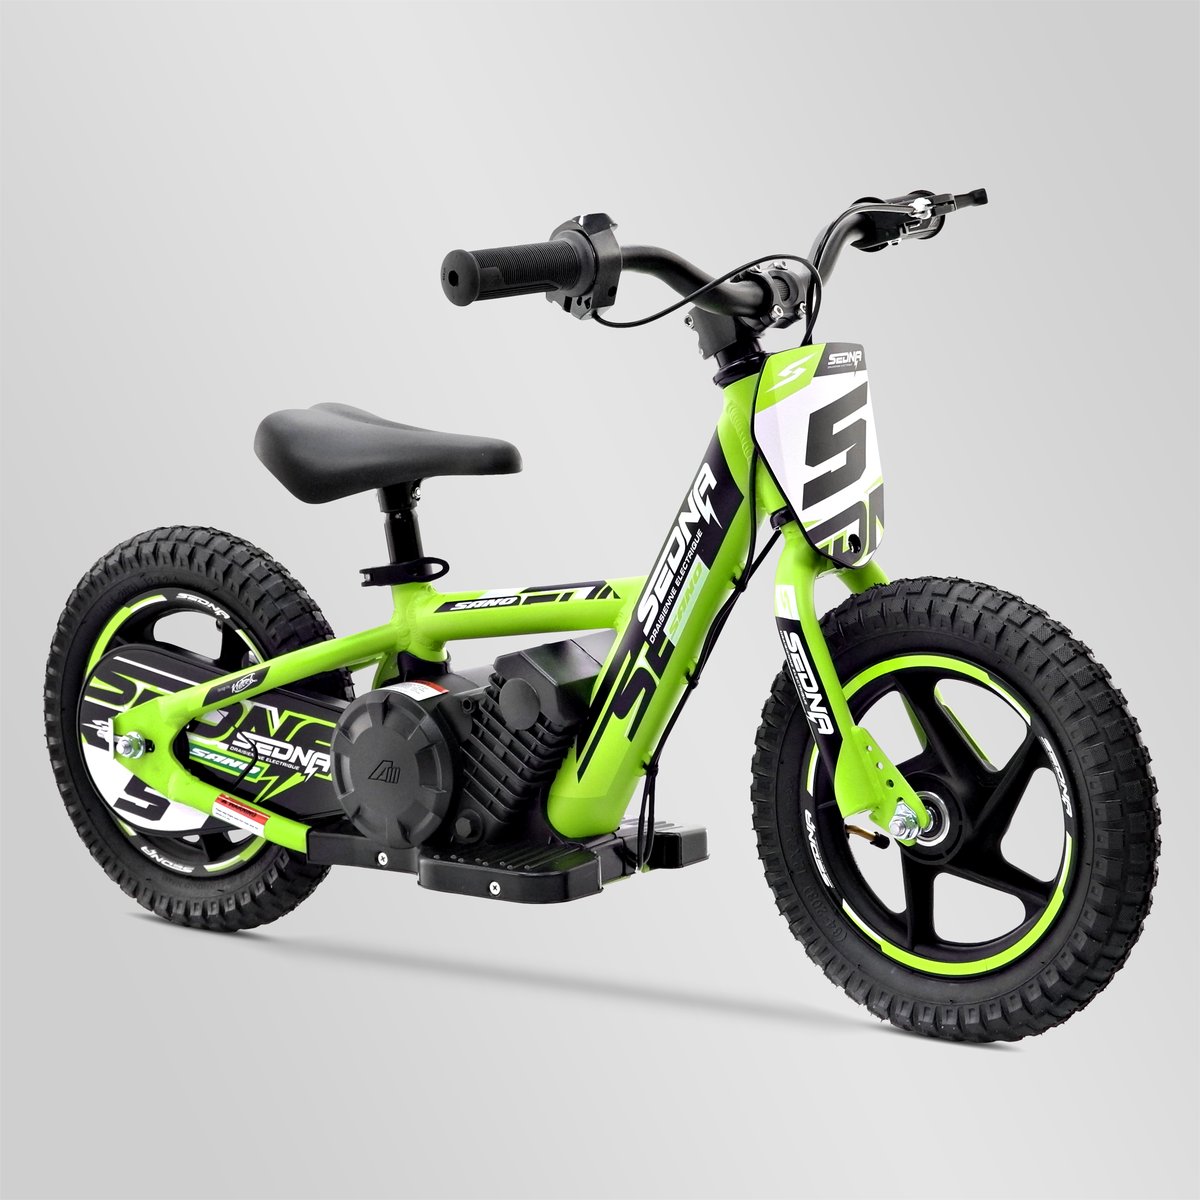 Draisienne électrique apollo rxf sedna 12" 100w, Minimoto et Dirt Bike |  Smallmx - Dirt bike, Pit bike, Quads, Minimoto